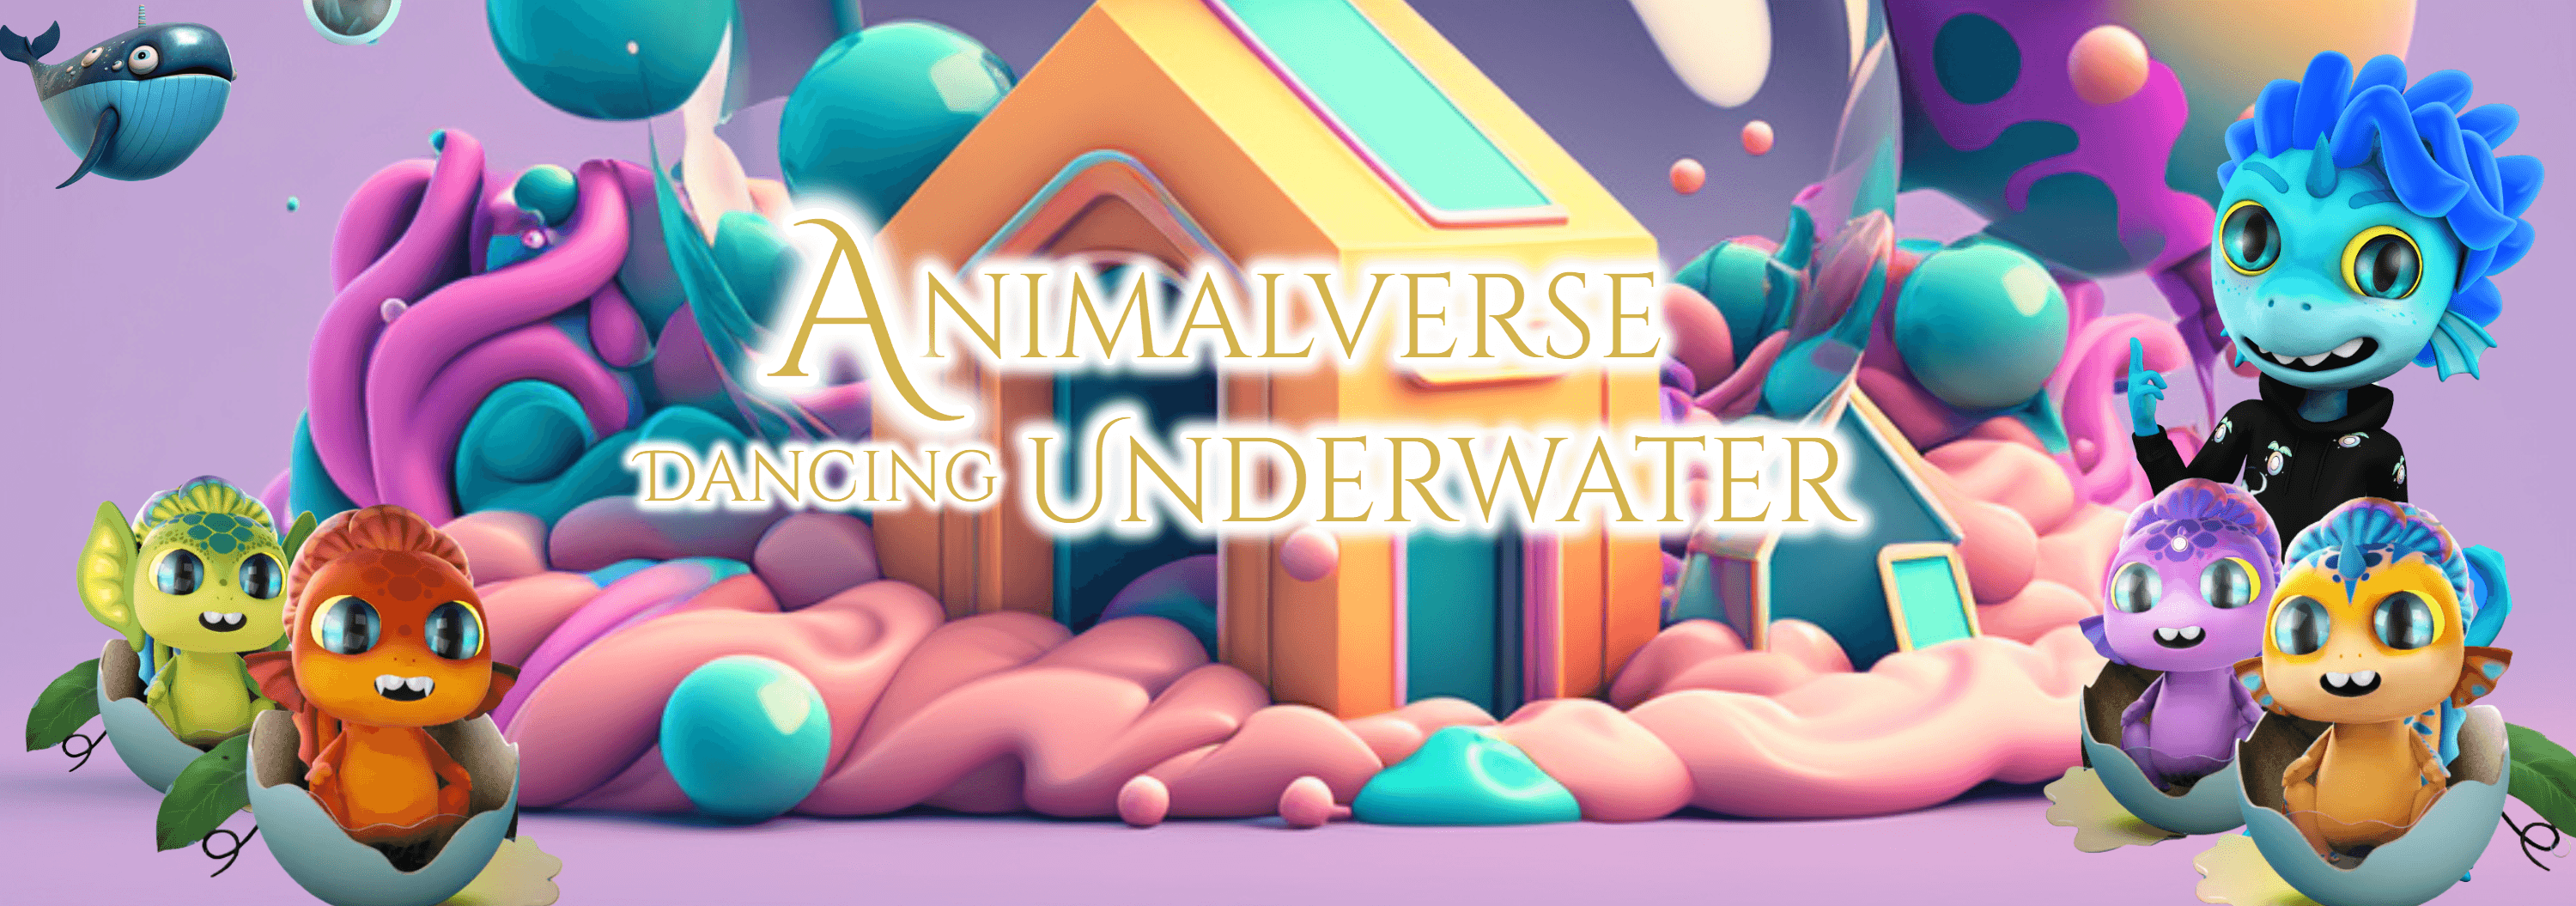 Animalverse_Dancing_Underwater banner